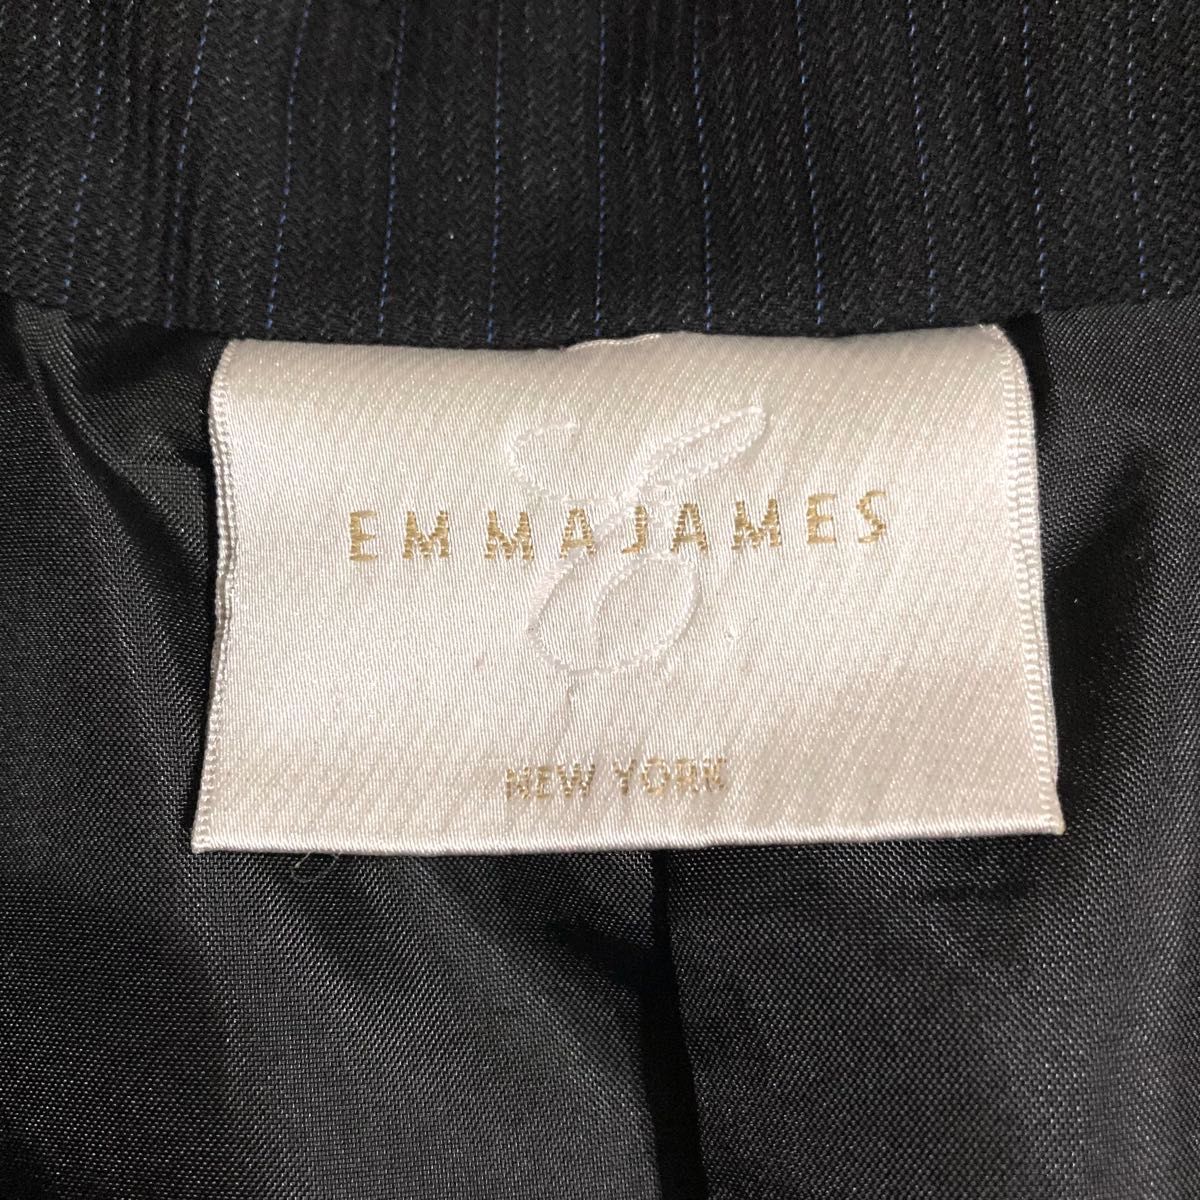 【訳あり】EMMAJAMES　スーツ　スカート　13号　XL相当　大きいサイズ